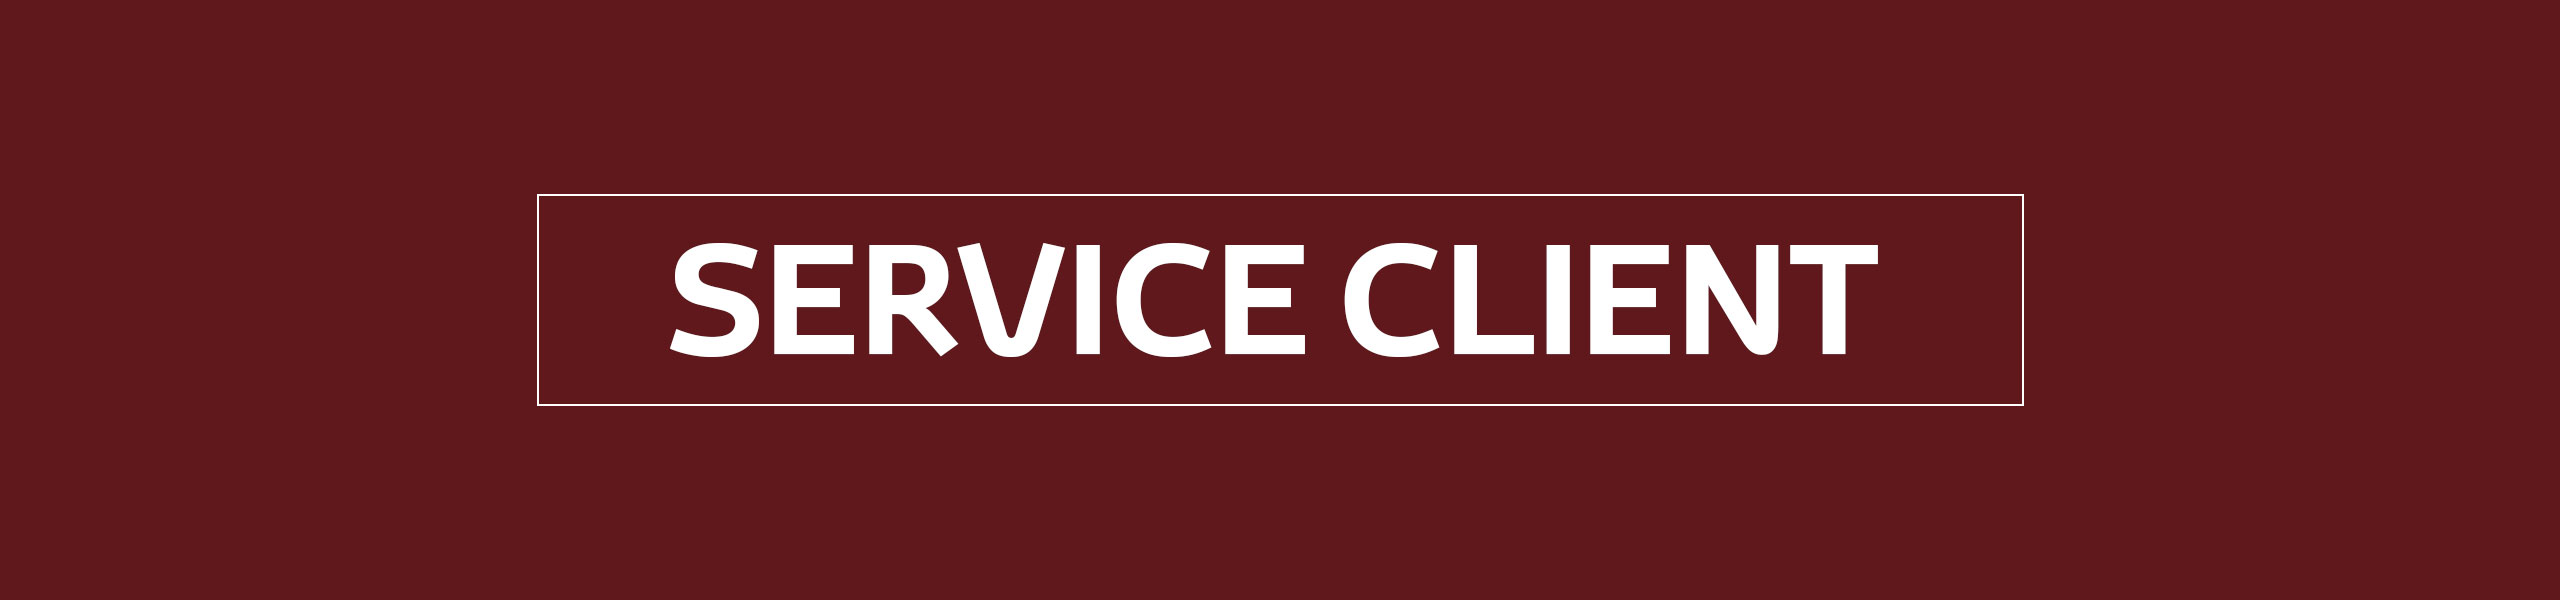 service client image